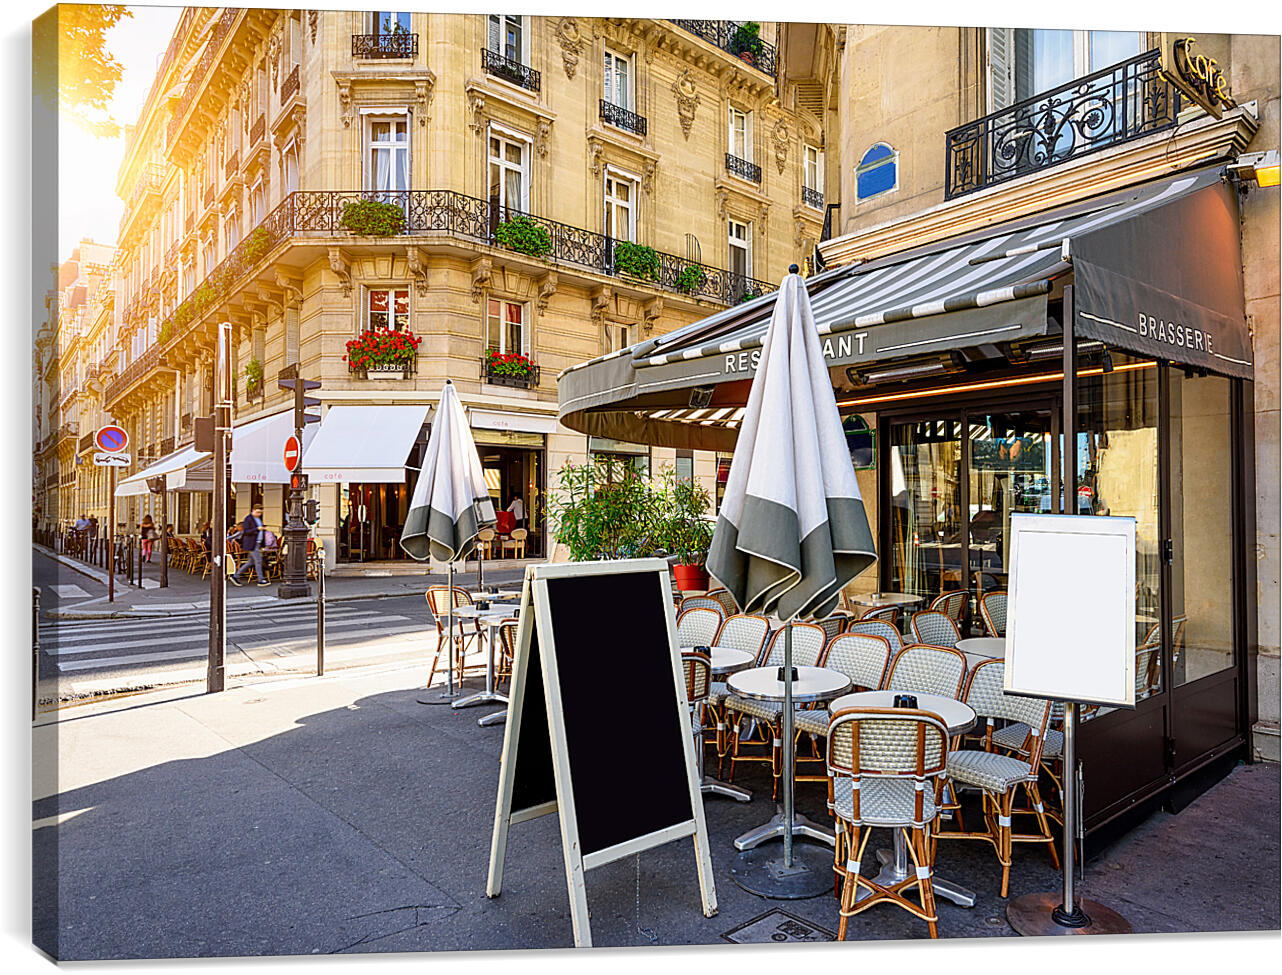 Постер и плакат - Кафе на улице Парижа